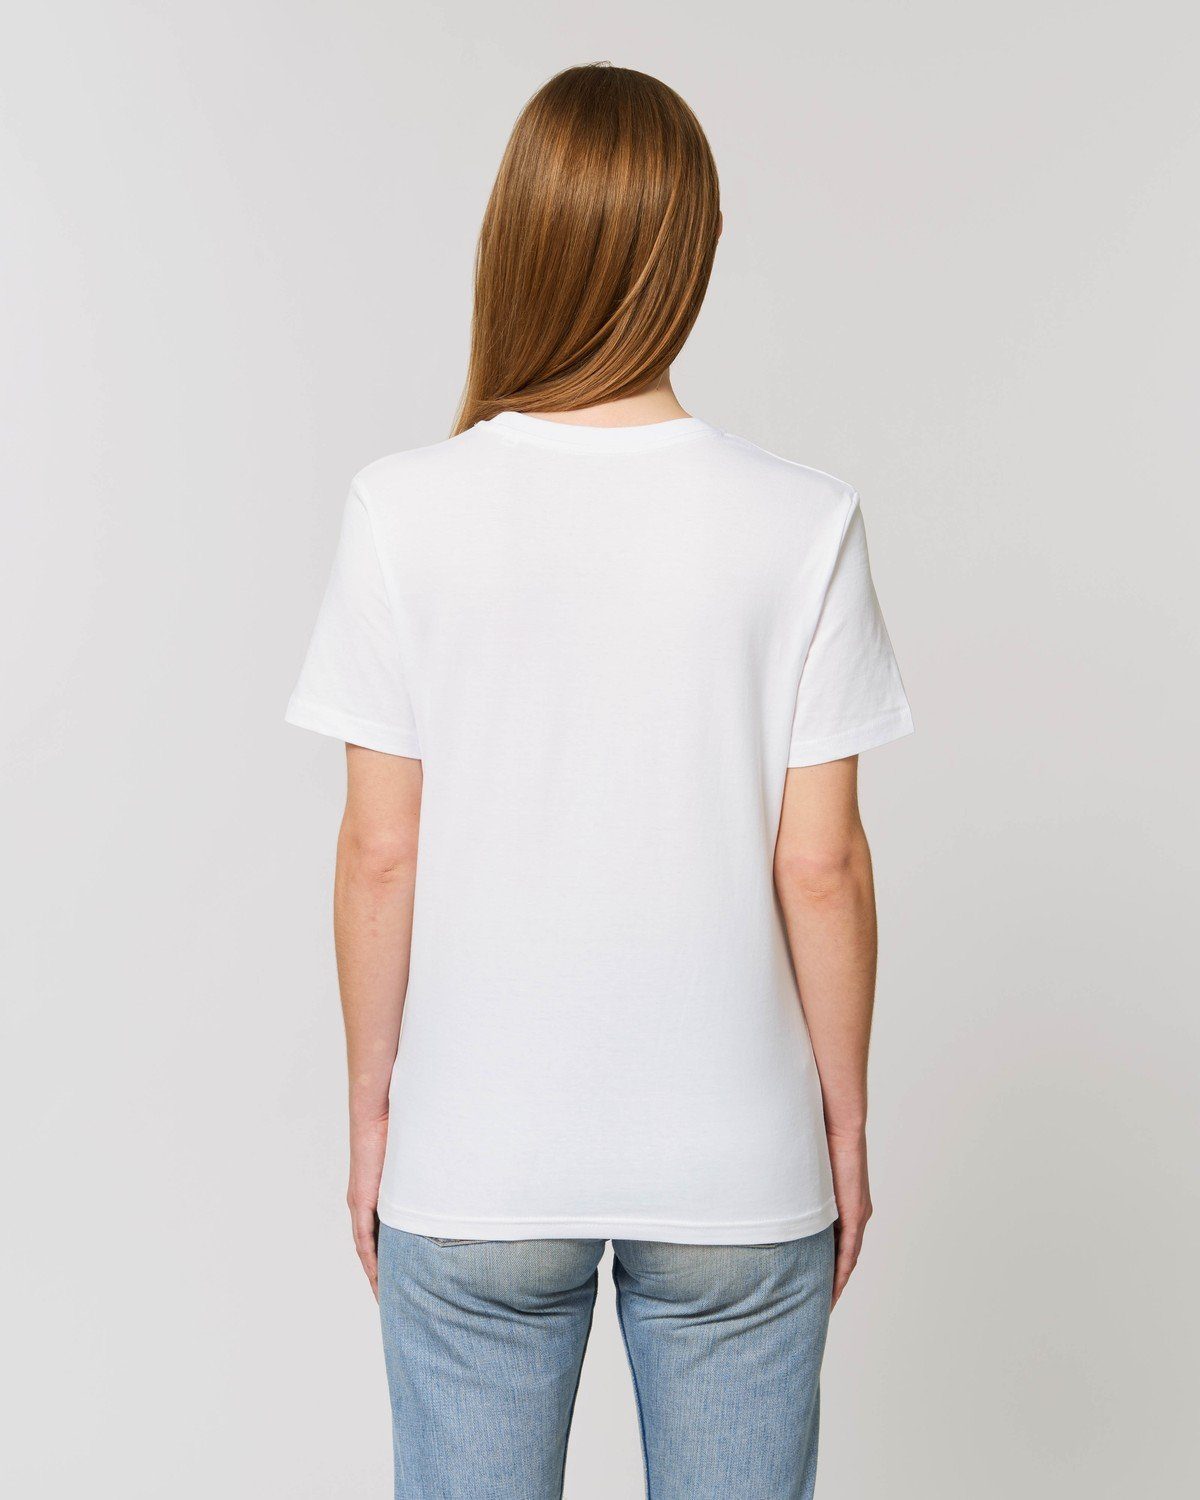 Hilltop T-Shirt White Unisex Hochwertiges aus Bio-Baumwolle 100% T-Shirt